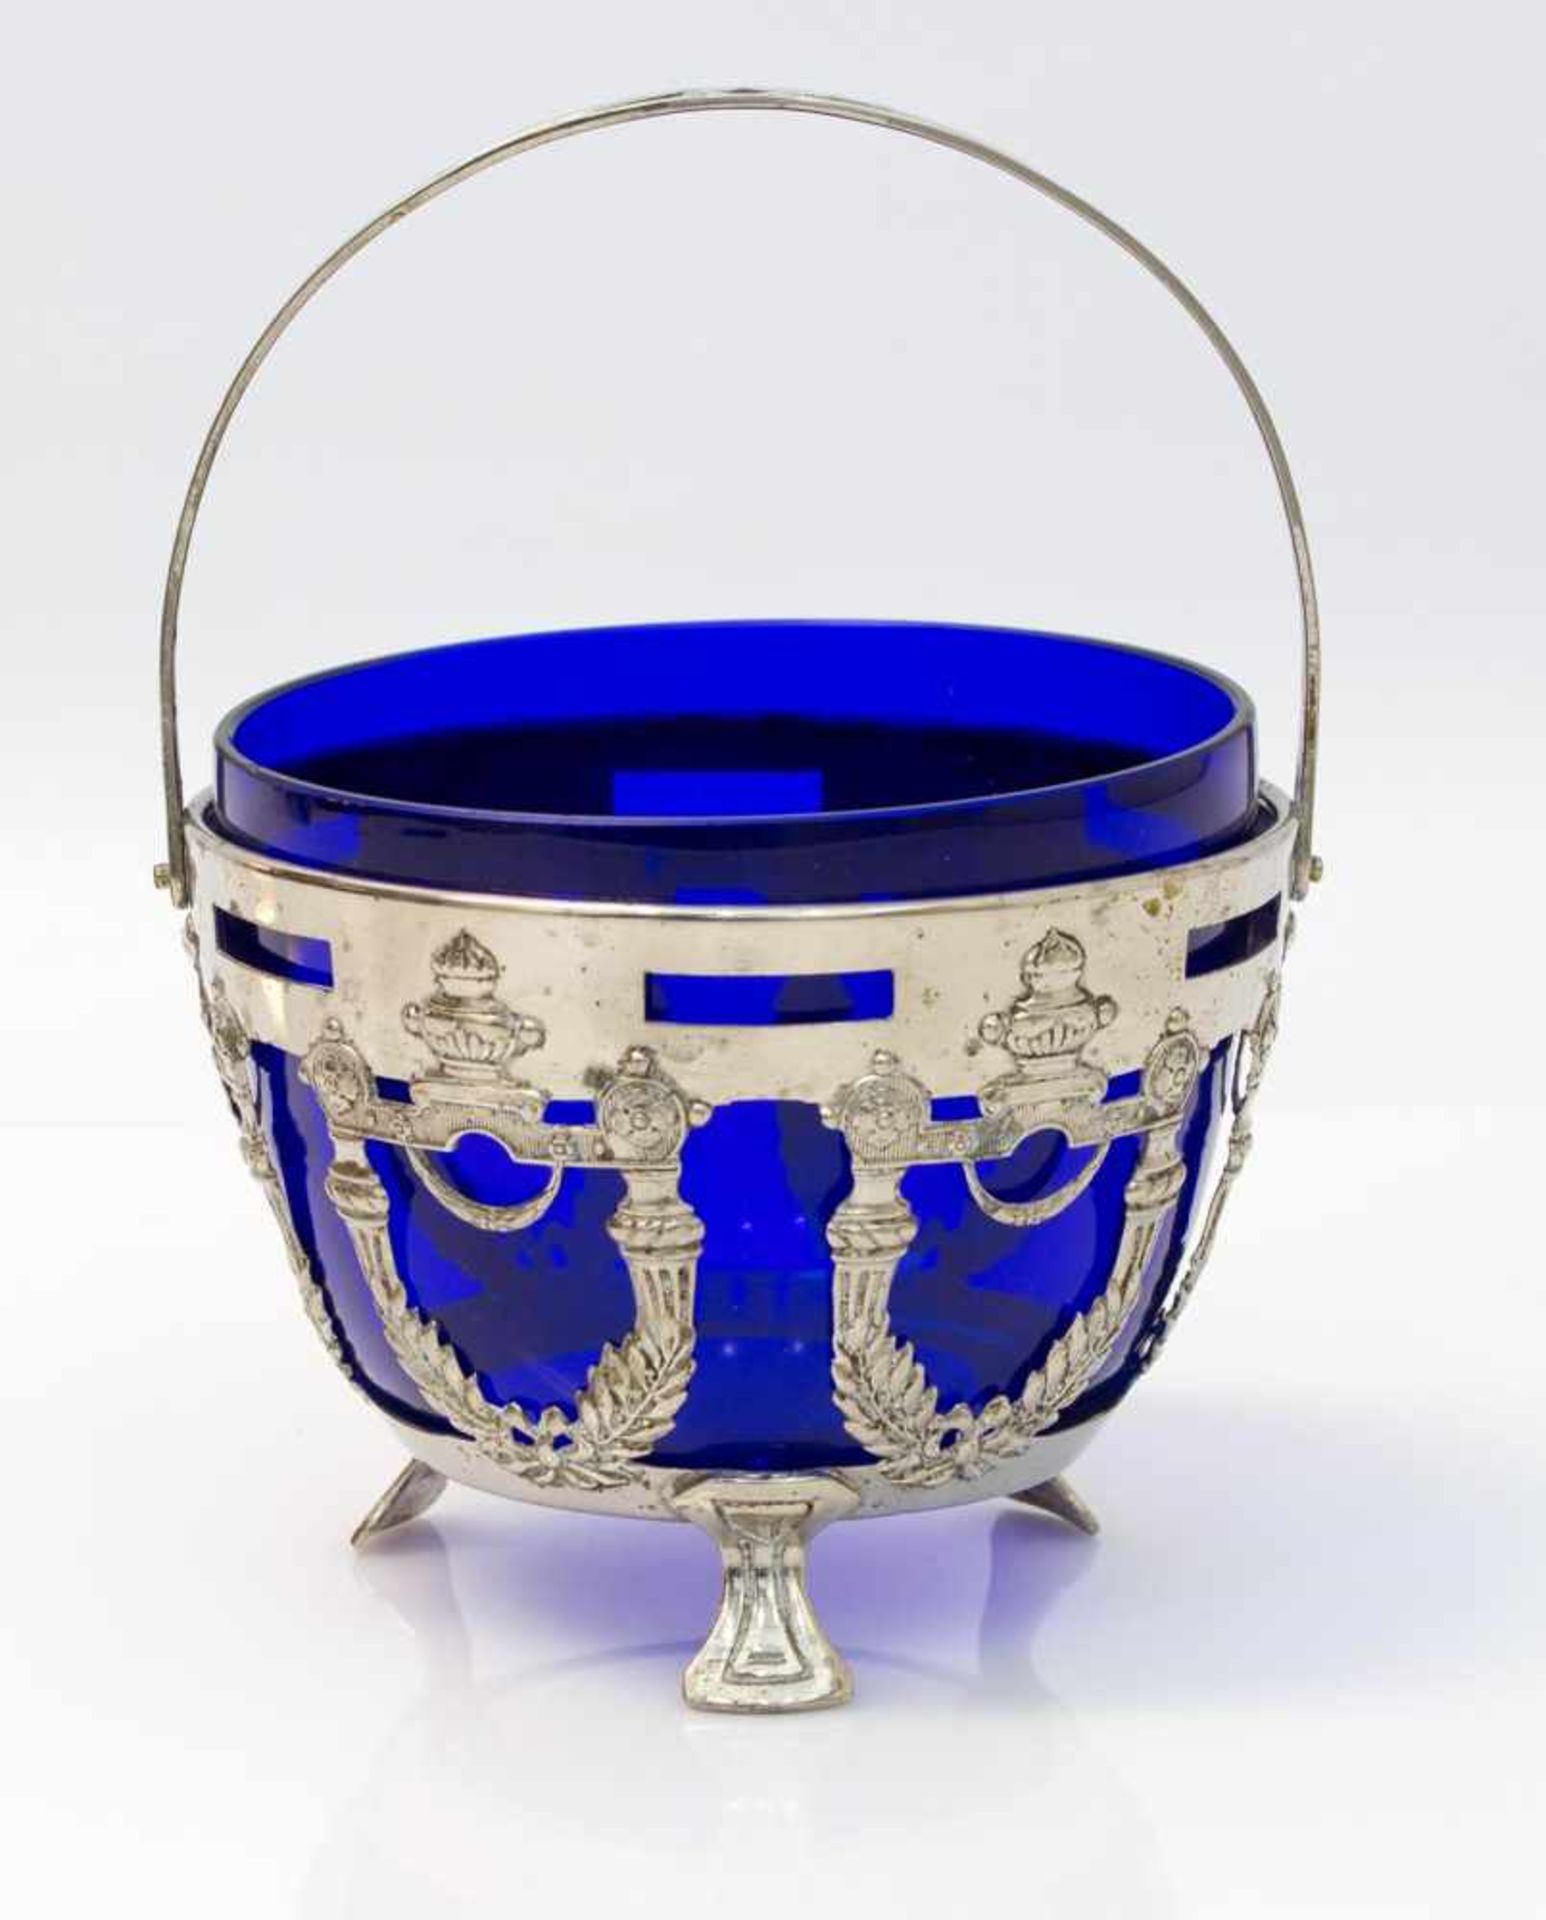 Konfektkörbchen nach 1900, Blauglasschale mit durchbrochener Metallmontierung u. scharniertem